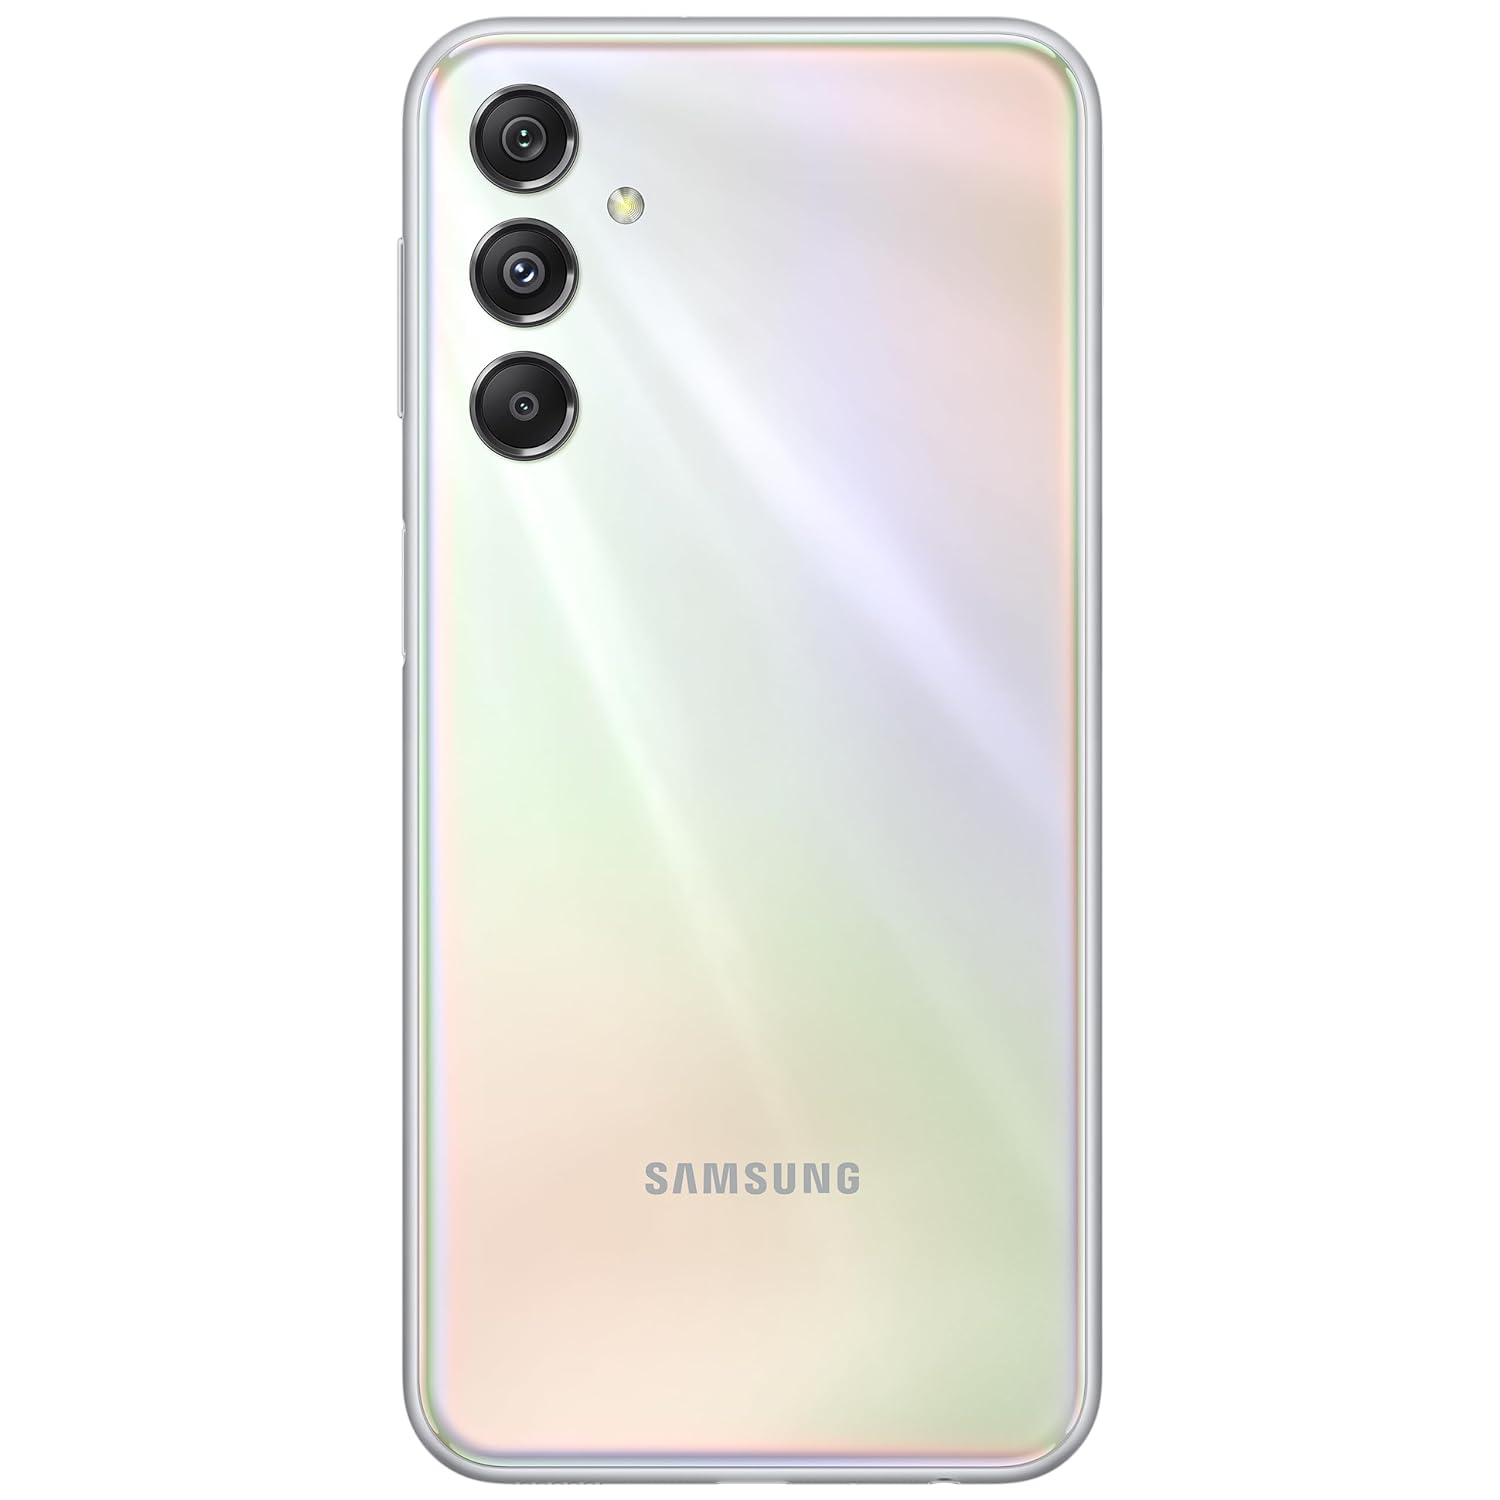 Samsung Galaxy M34 5G (Prism Silver, 128GB) (6GB RAM)